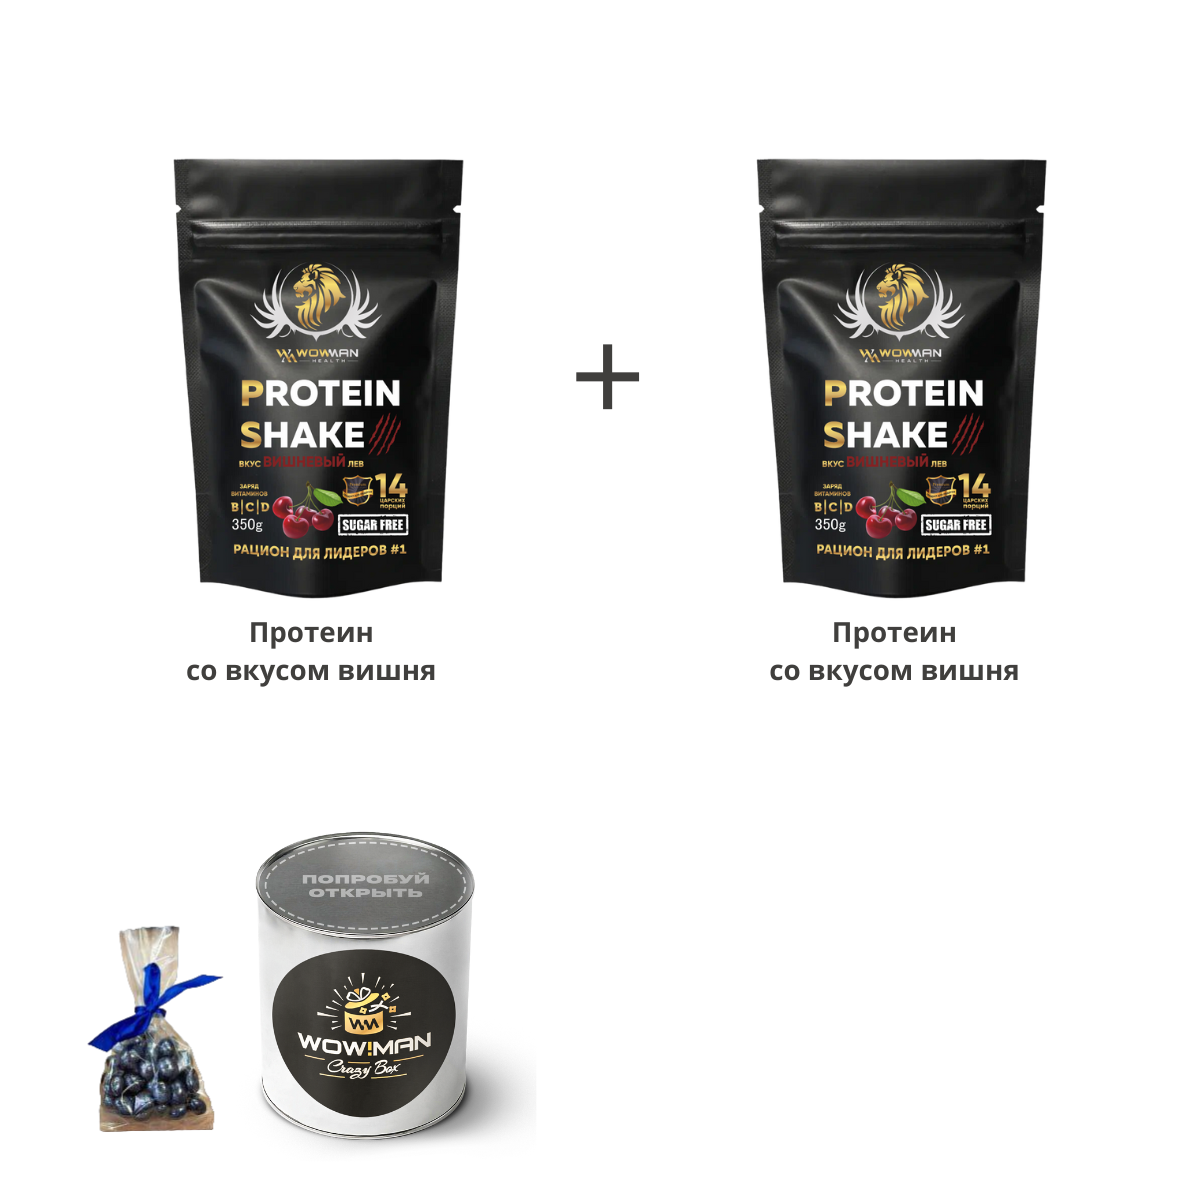 Подарочный набор WowMan Протеин вкус вишня + Протеин вкус вишня